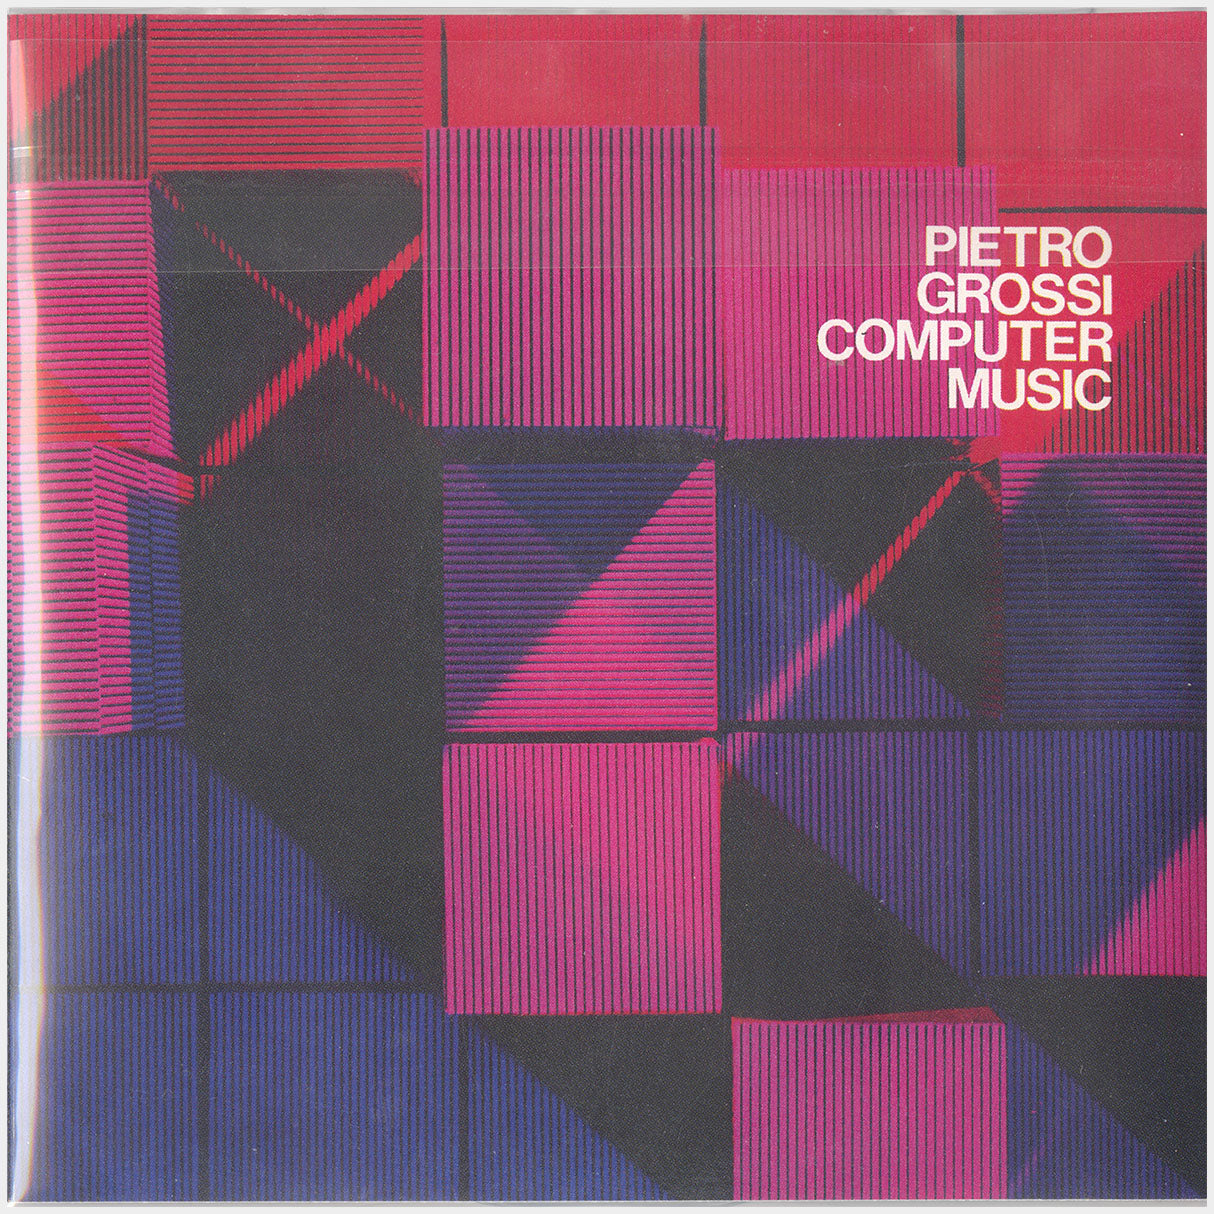 [CP 040-041-041.5 CD] Pietro Grossi; Computer Music, Buon Natale 1967 e Felice Anno Nuovo